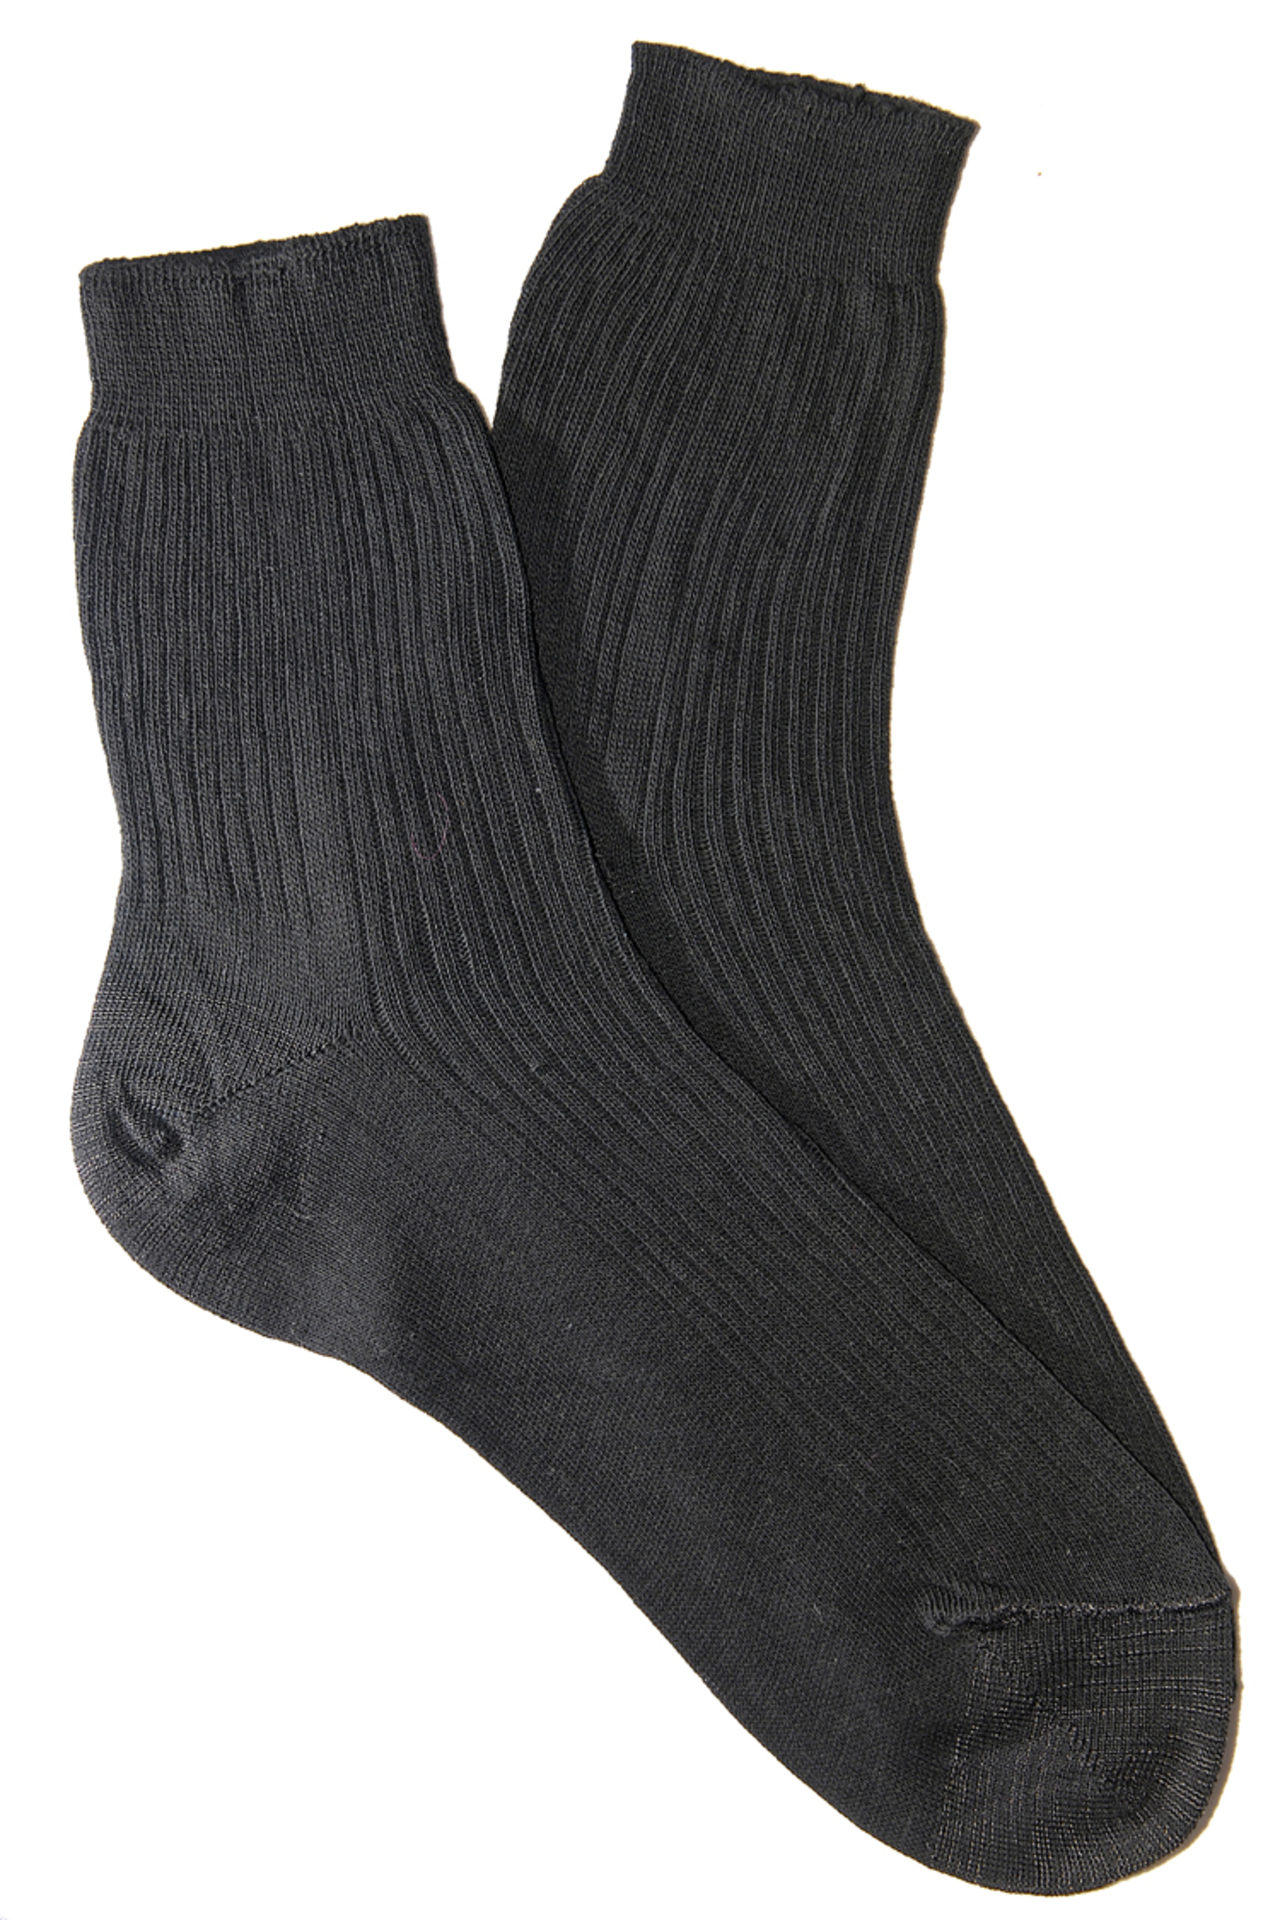 Черные носки хлопок. Носки уставные БТК 100% хлопок. Носки мужские адидас хлопка 85%. Носки мужские p29 черный Everneat. Носки мужские х/б черные р-р 29 Фортуна /100.